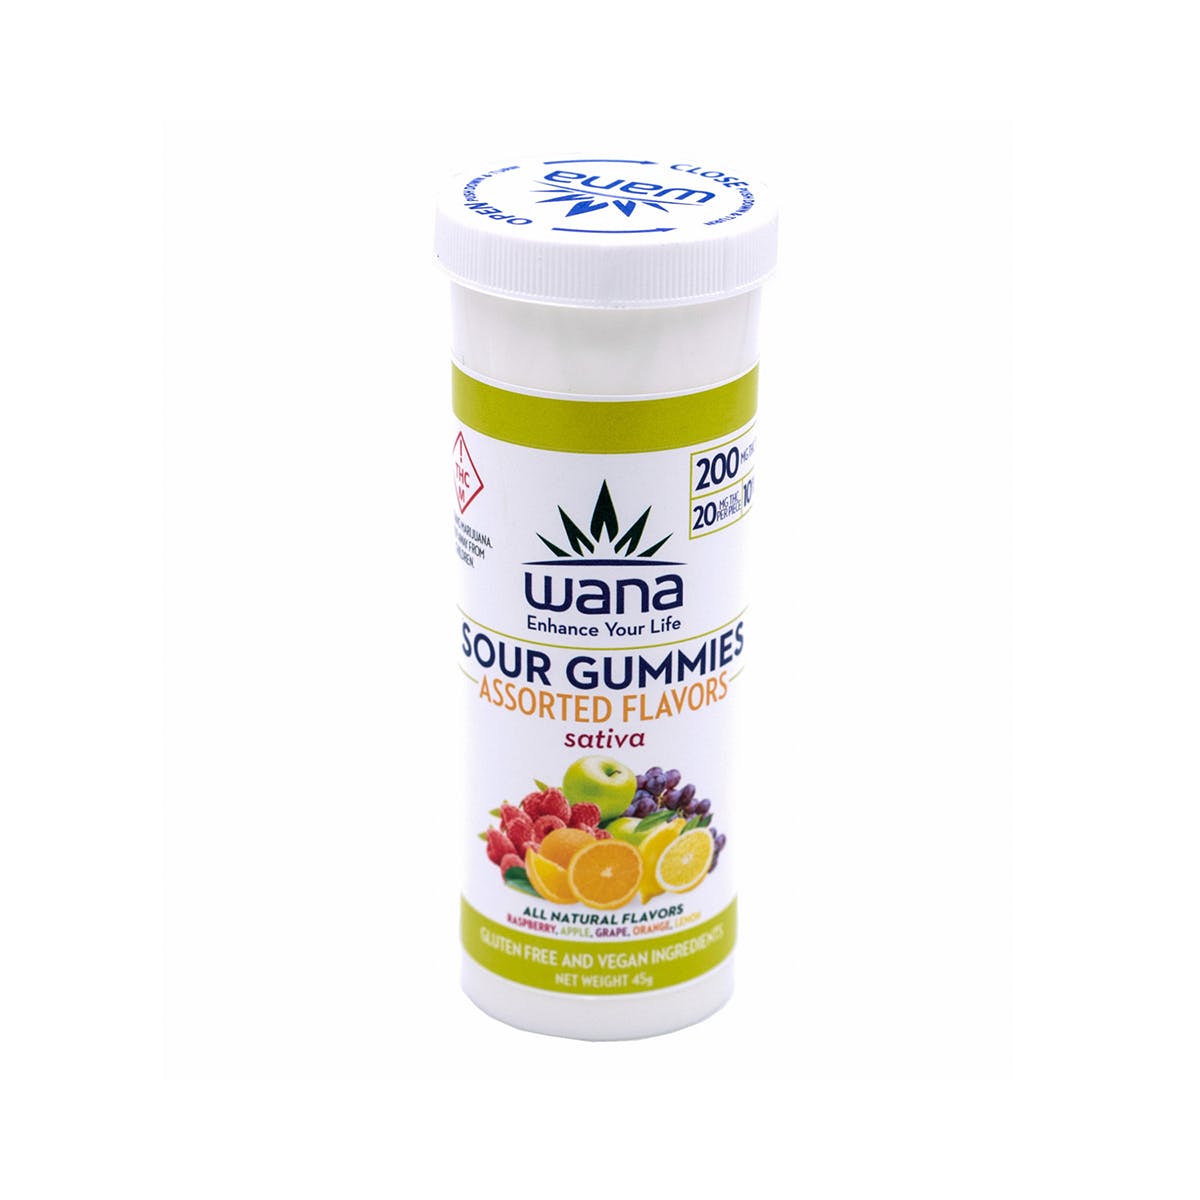 marijuana-dispensaries-herbal-alternatives-sunnyside-in-denver-sour-assorted-gummies-200mg-sativa-med